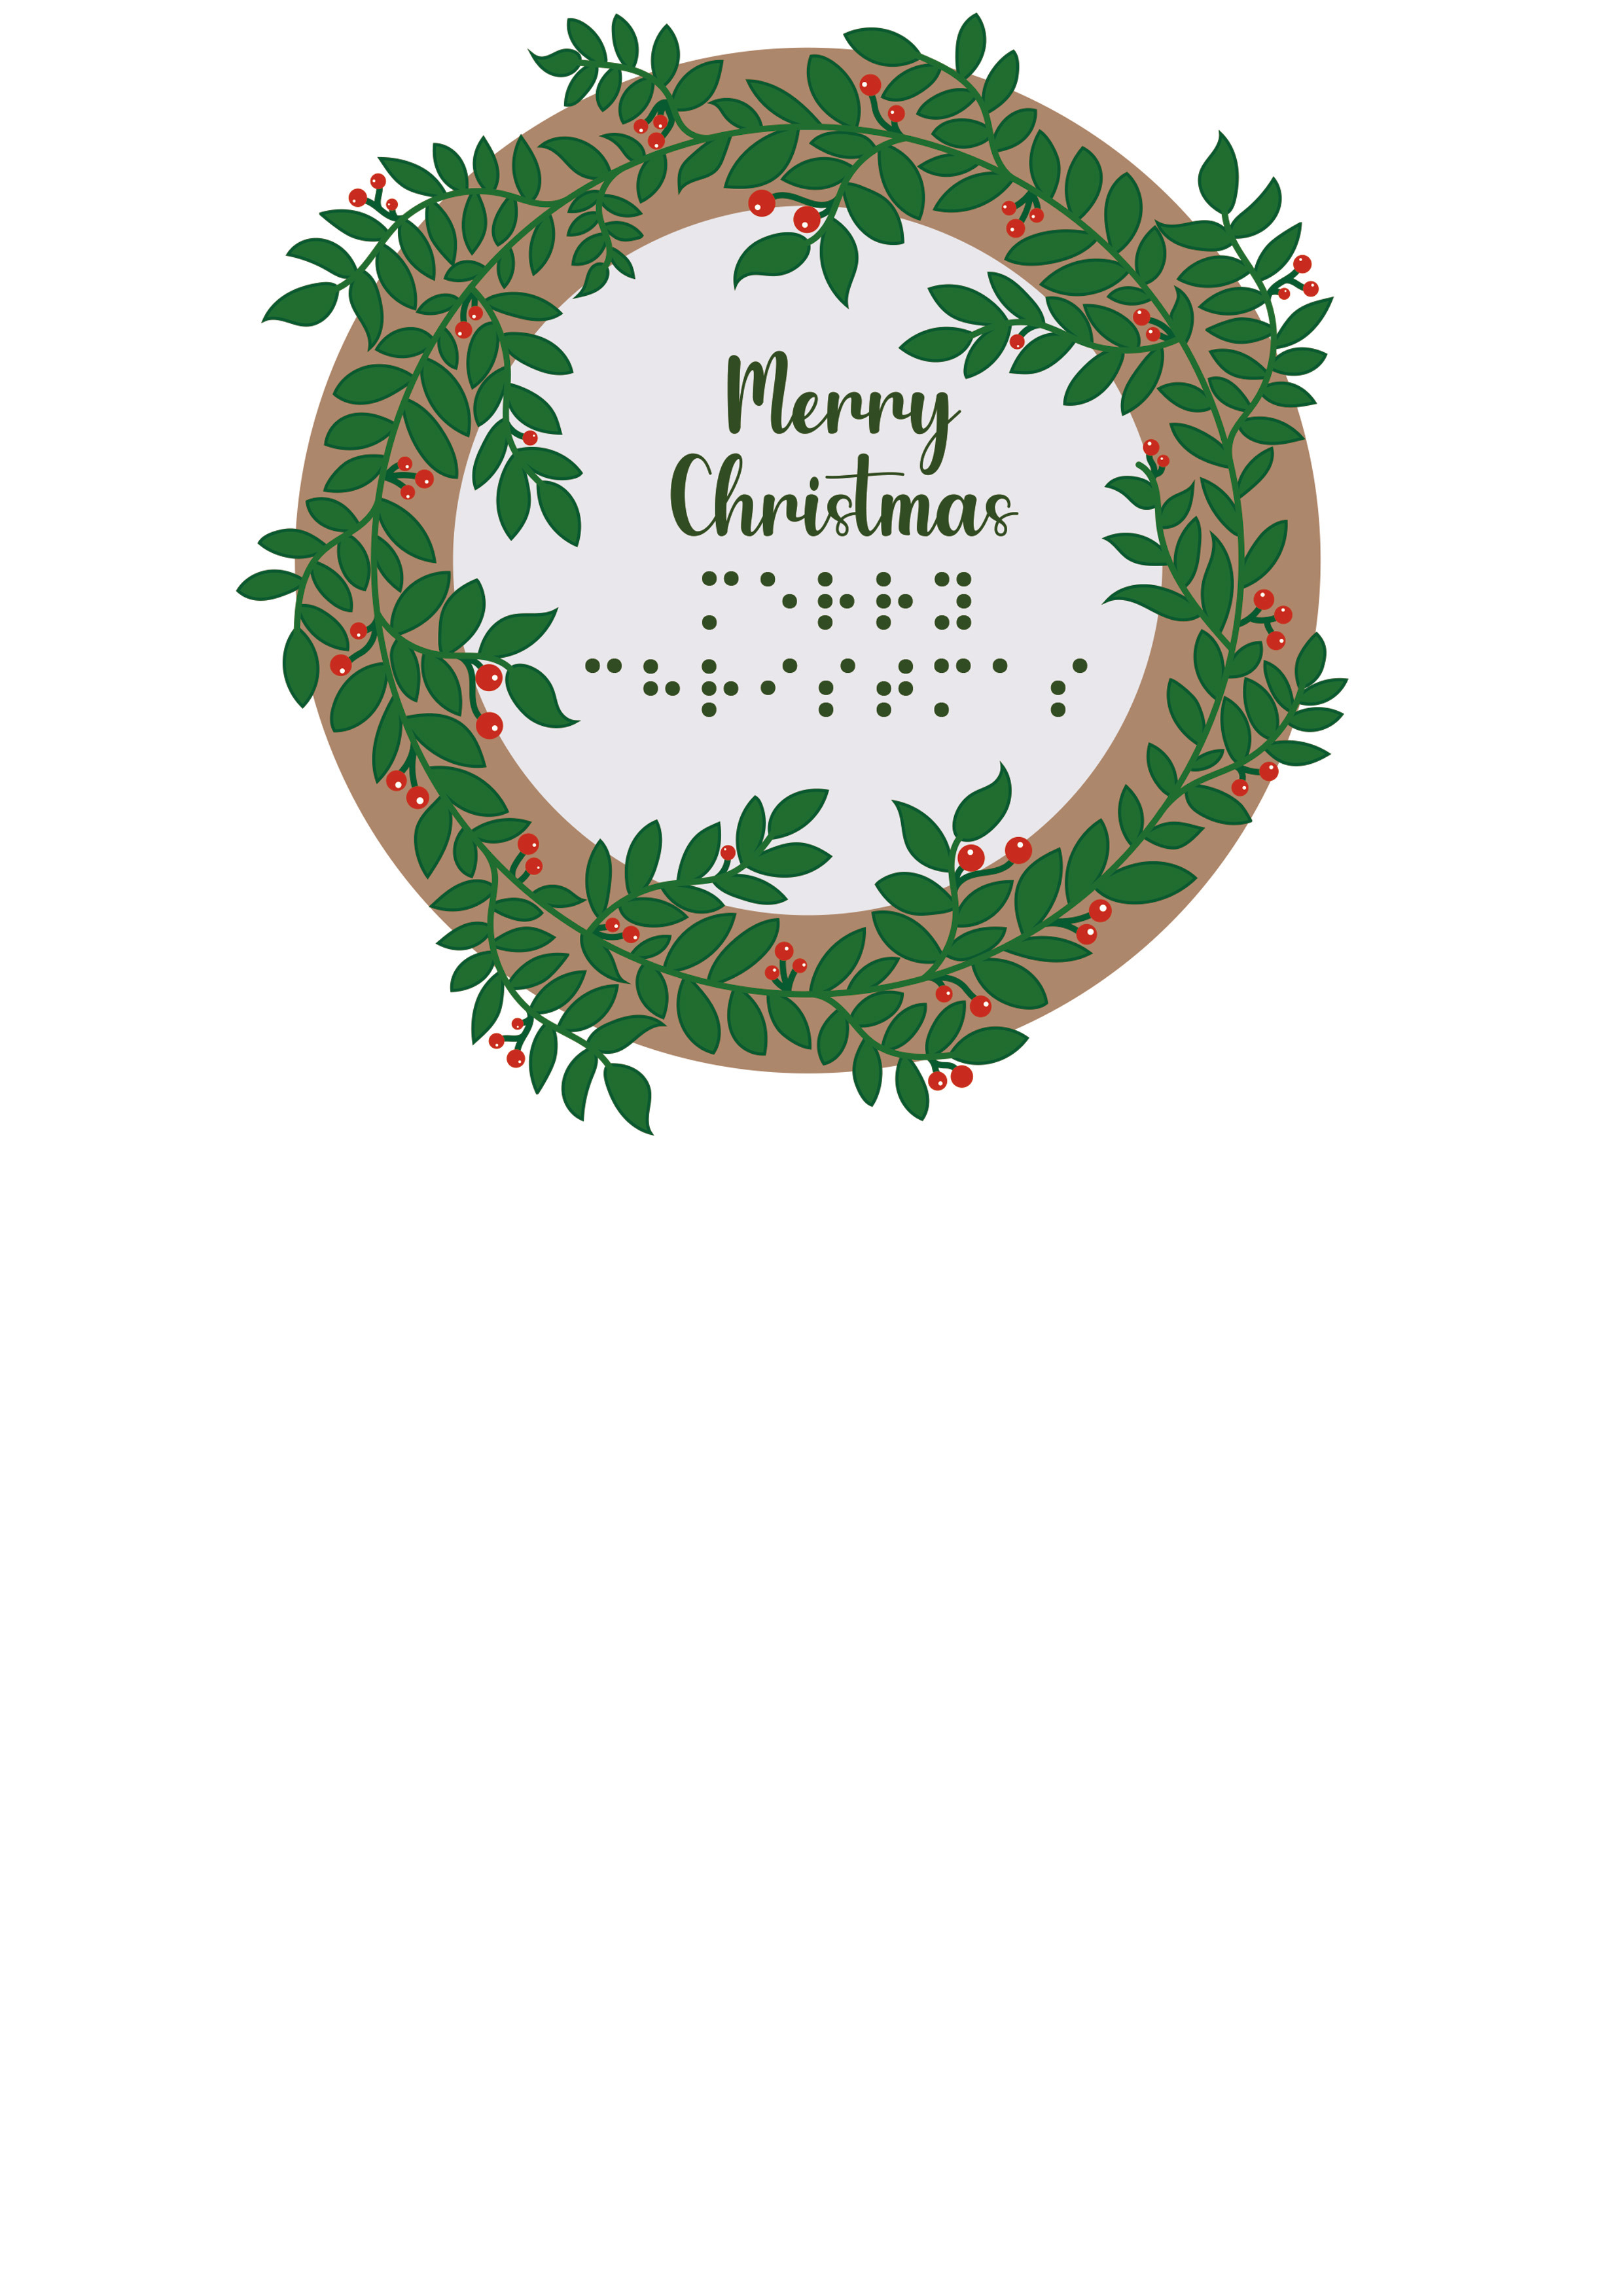 Voelbare kaart in de vorm van een krans met kerstgroen met braille en reliëf.
Met de tekst: Merry Christmas.